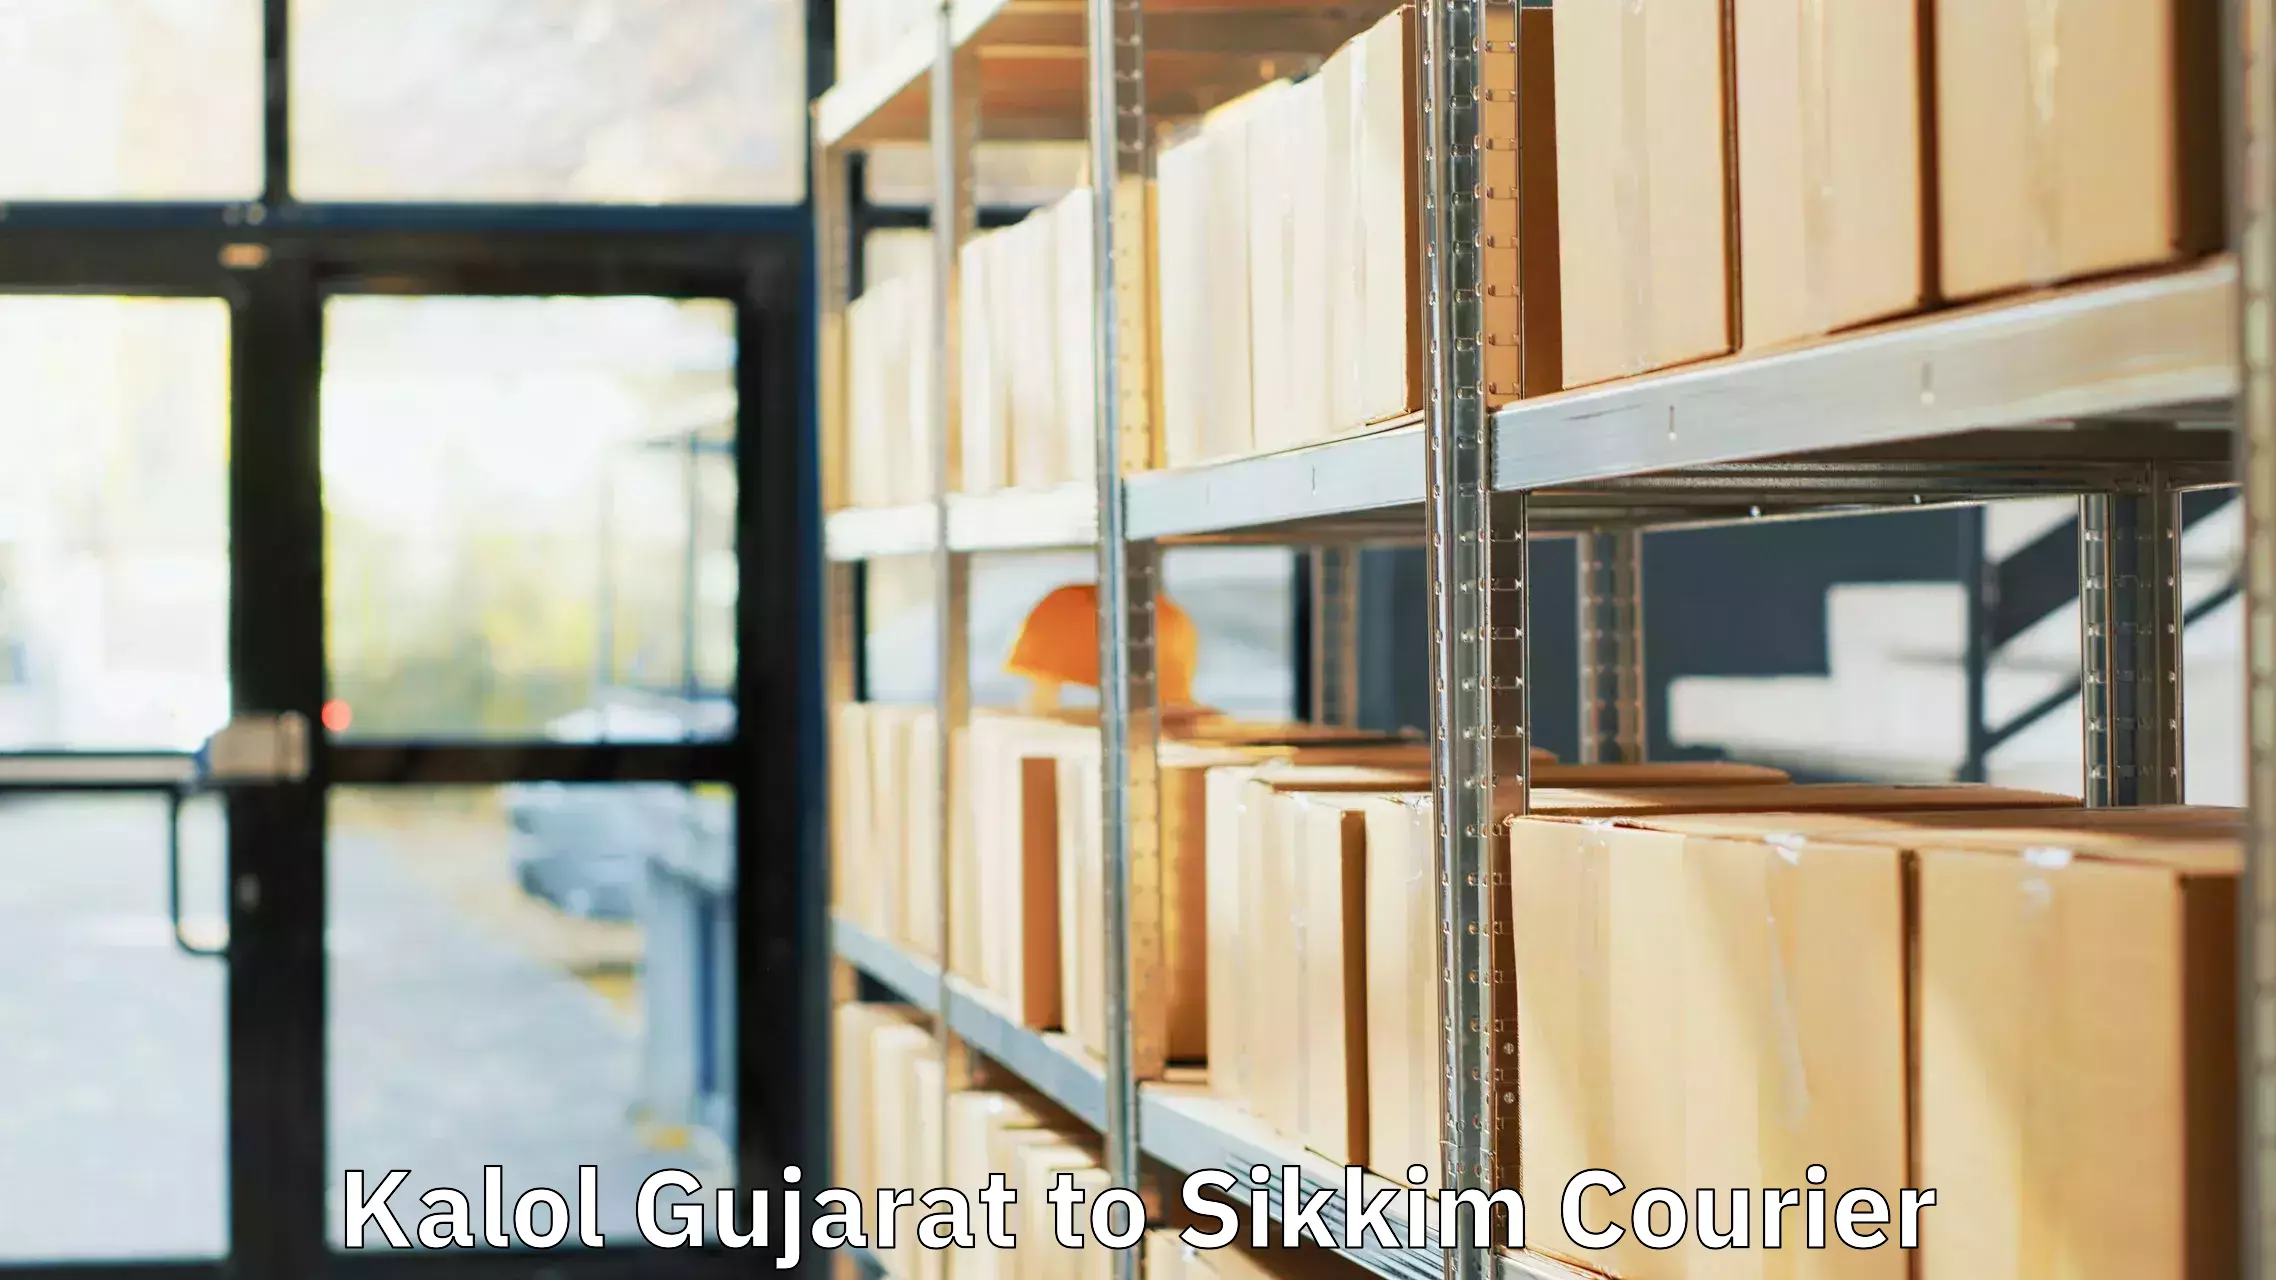 Door-to-door baggage service Kalol Gujarat to Sikkim